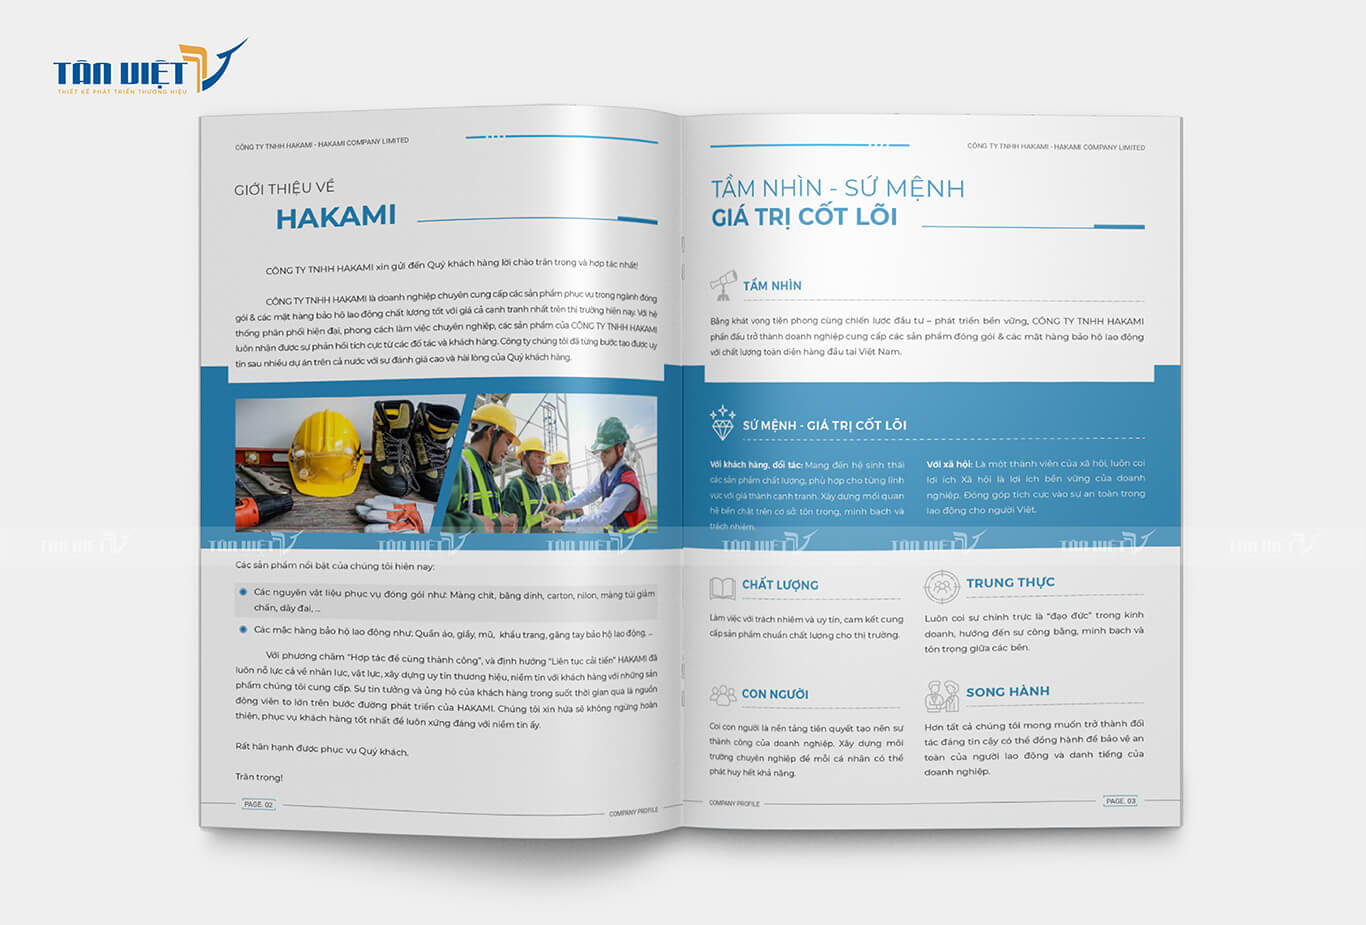 Bảo hộ lao động HAKAMI - Giới thiệu về HAKAMI - Tầm nhìn - sứ mệnh - giá trị cốt lõi